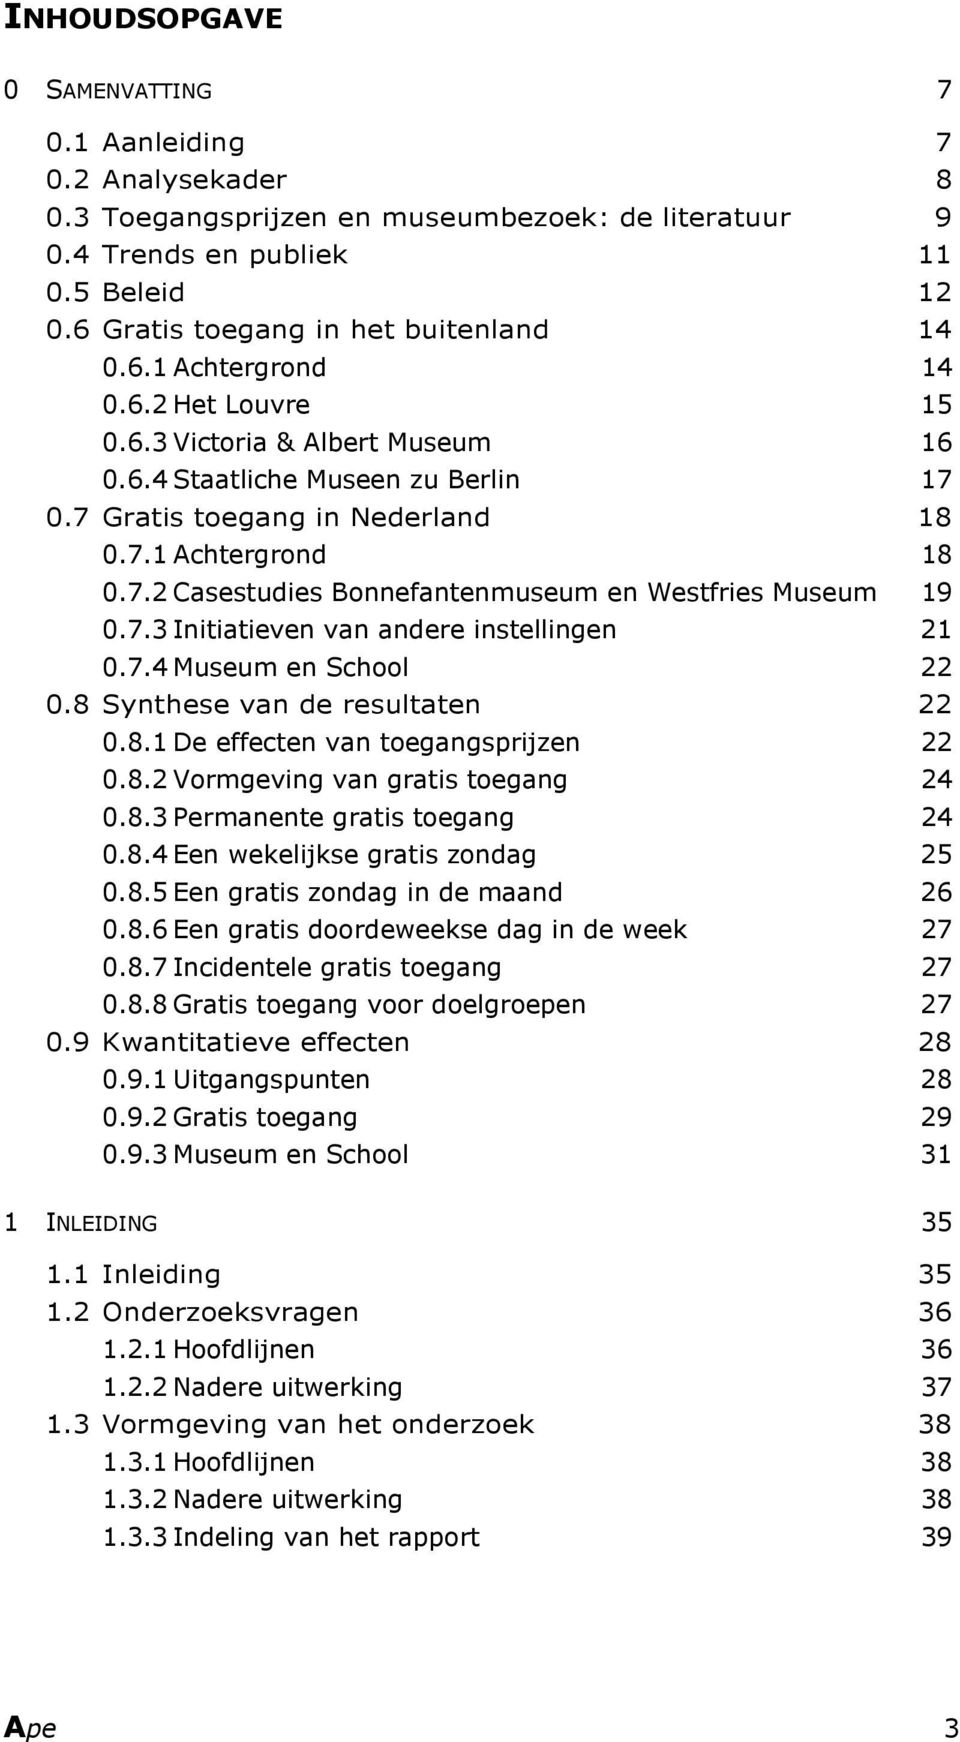 7.2 Casestudies Bonnefantenmuseum en Westfries Museum 19 0.7.3 Initiatieven van andere instellingen 21 0.7.4 Museum en School 22 0.8 Synthese van de resultaten 22 0.8.1 De effecten van toegangsprijzen 22 0.